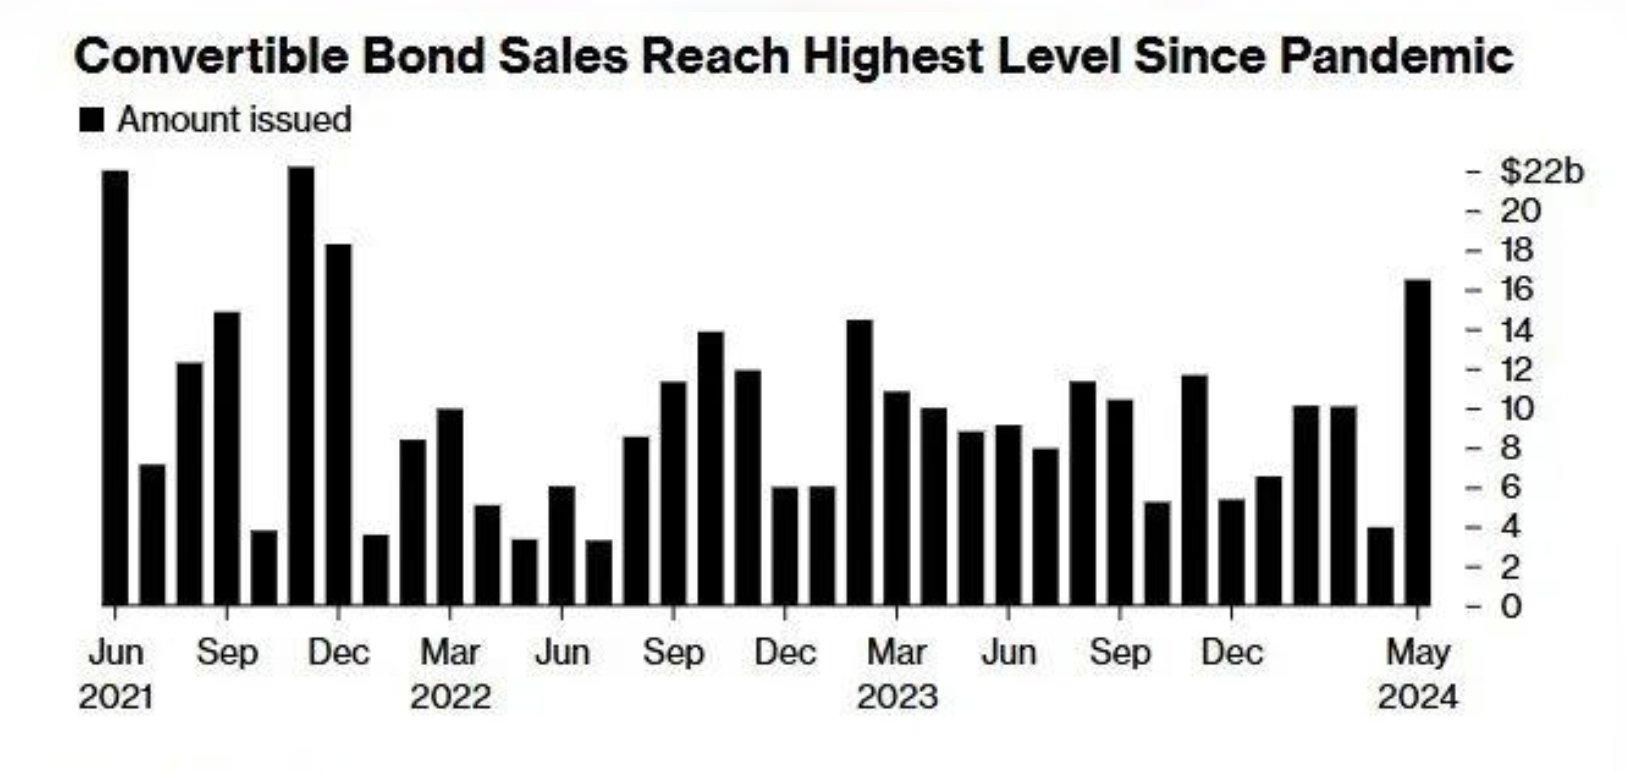 图：可转换债券销售额达到疫情以来最高水平 来源：Bloomberg